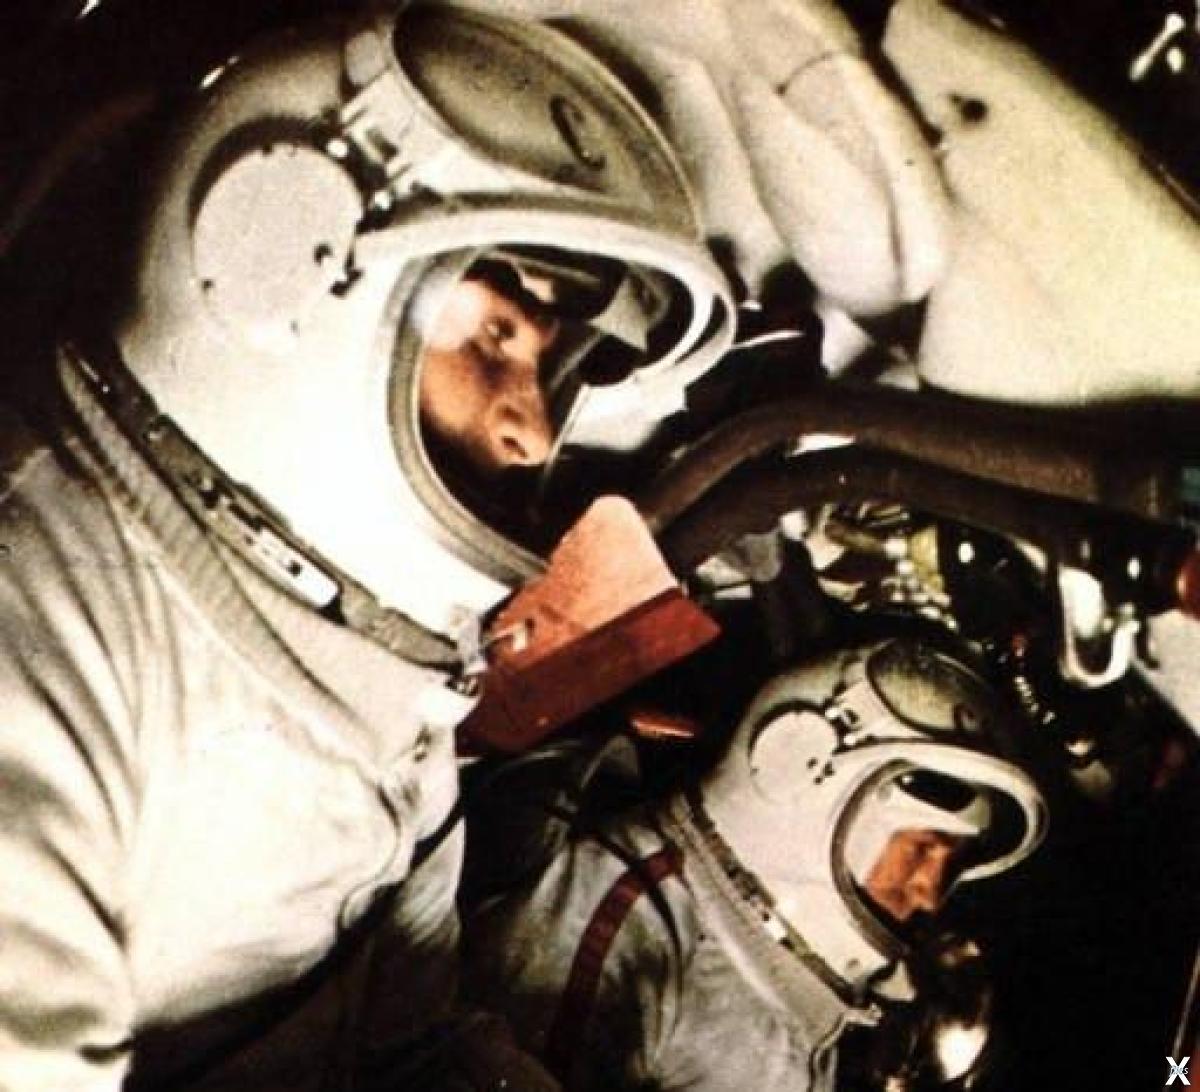 Космонавт полетевший в космос вторым. Корабль "Восход-2" с Алексеем Леоновым. Восход 2 космонавты Леонов и Беляев. Экипаж Восход 2 Леонов.